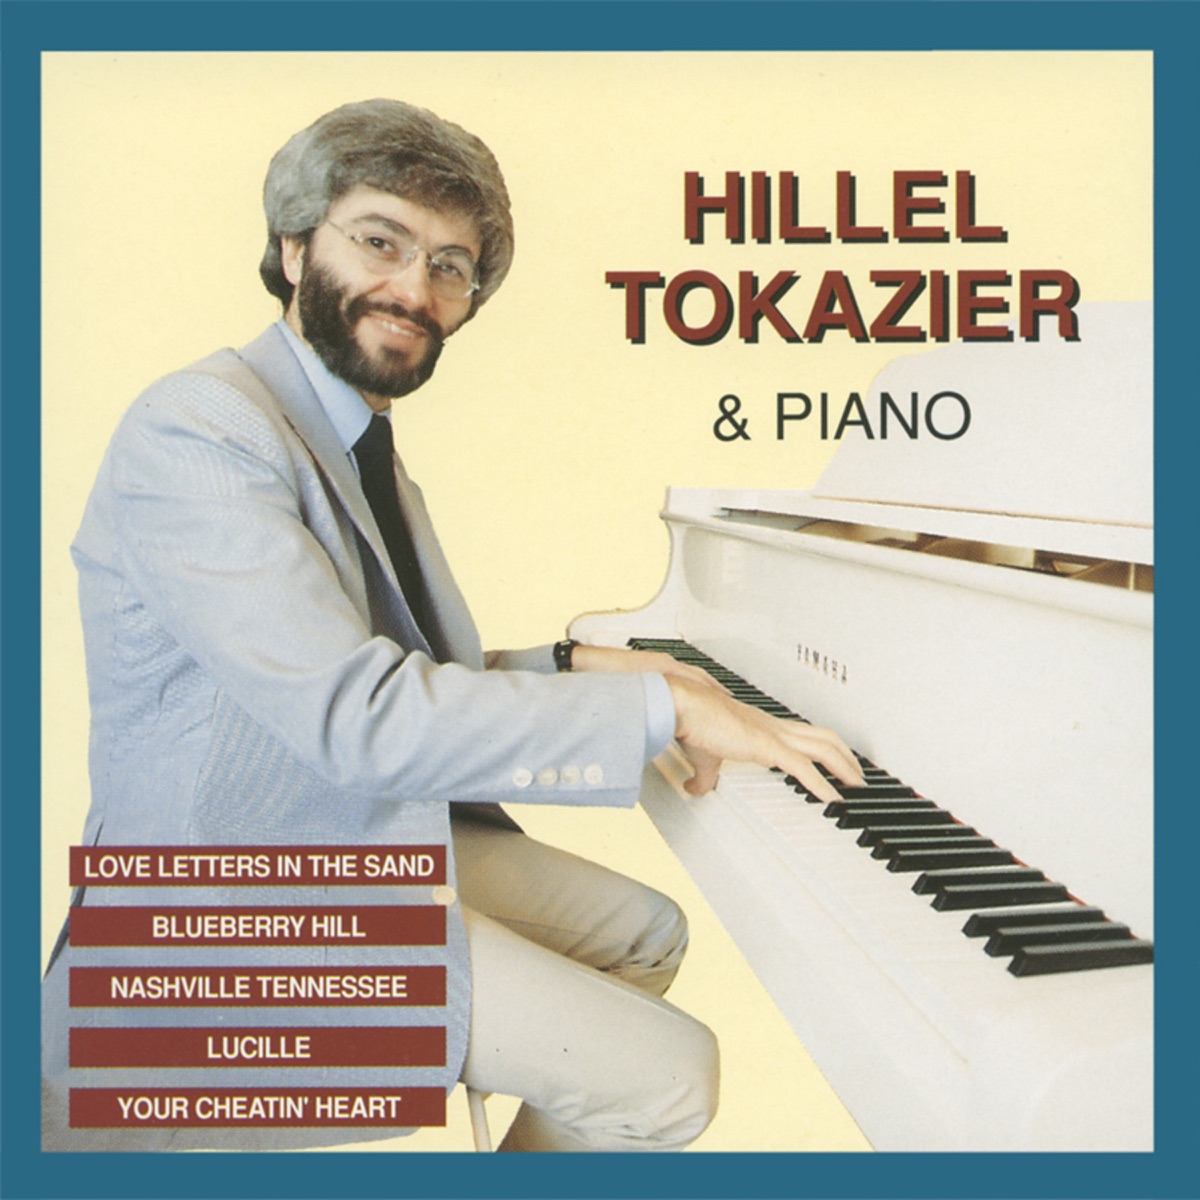 Kiitos Herralleni - Album by Hillel Tokazier - Apple Music